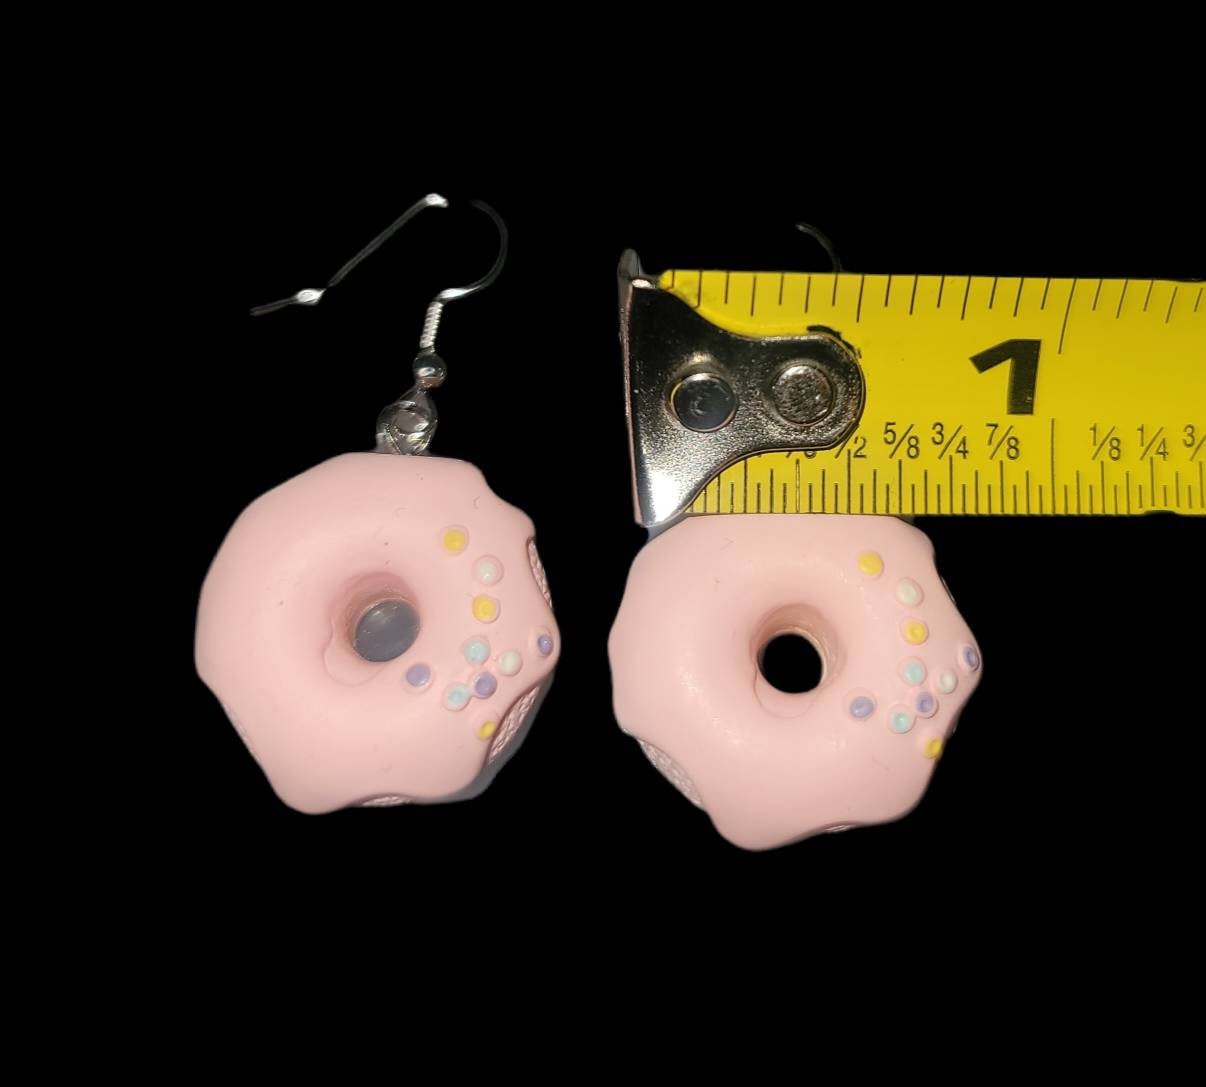 Pink frosting donut earrings dangle hook earrings